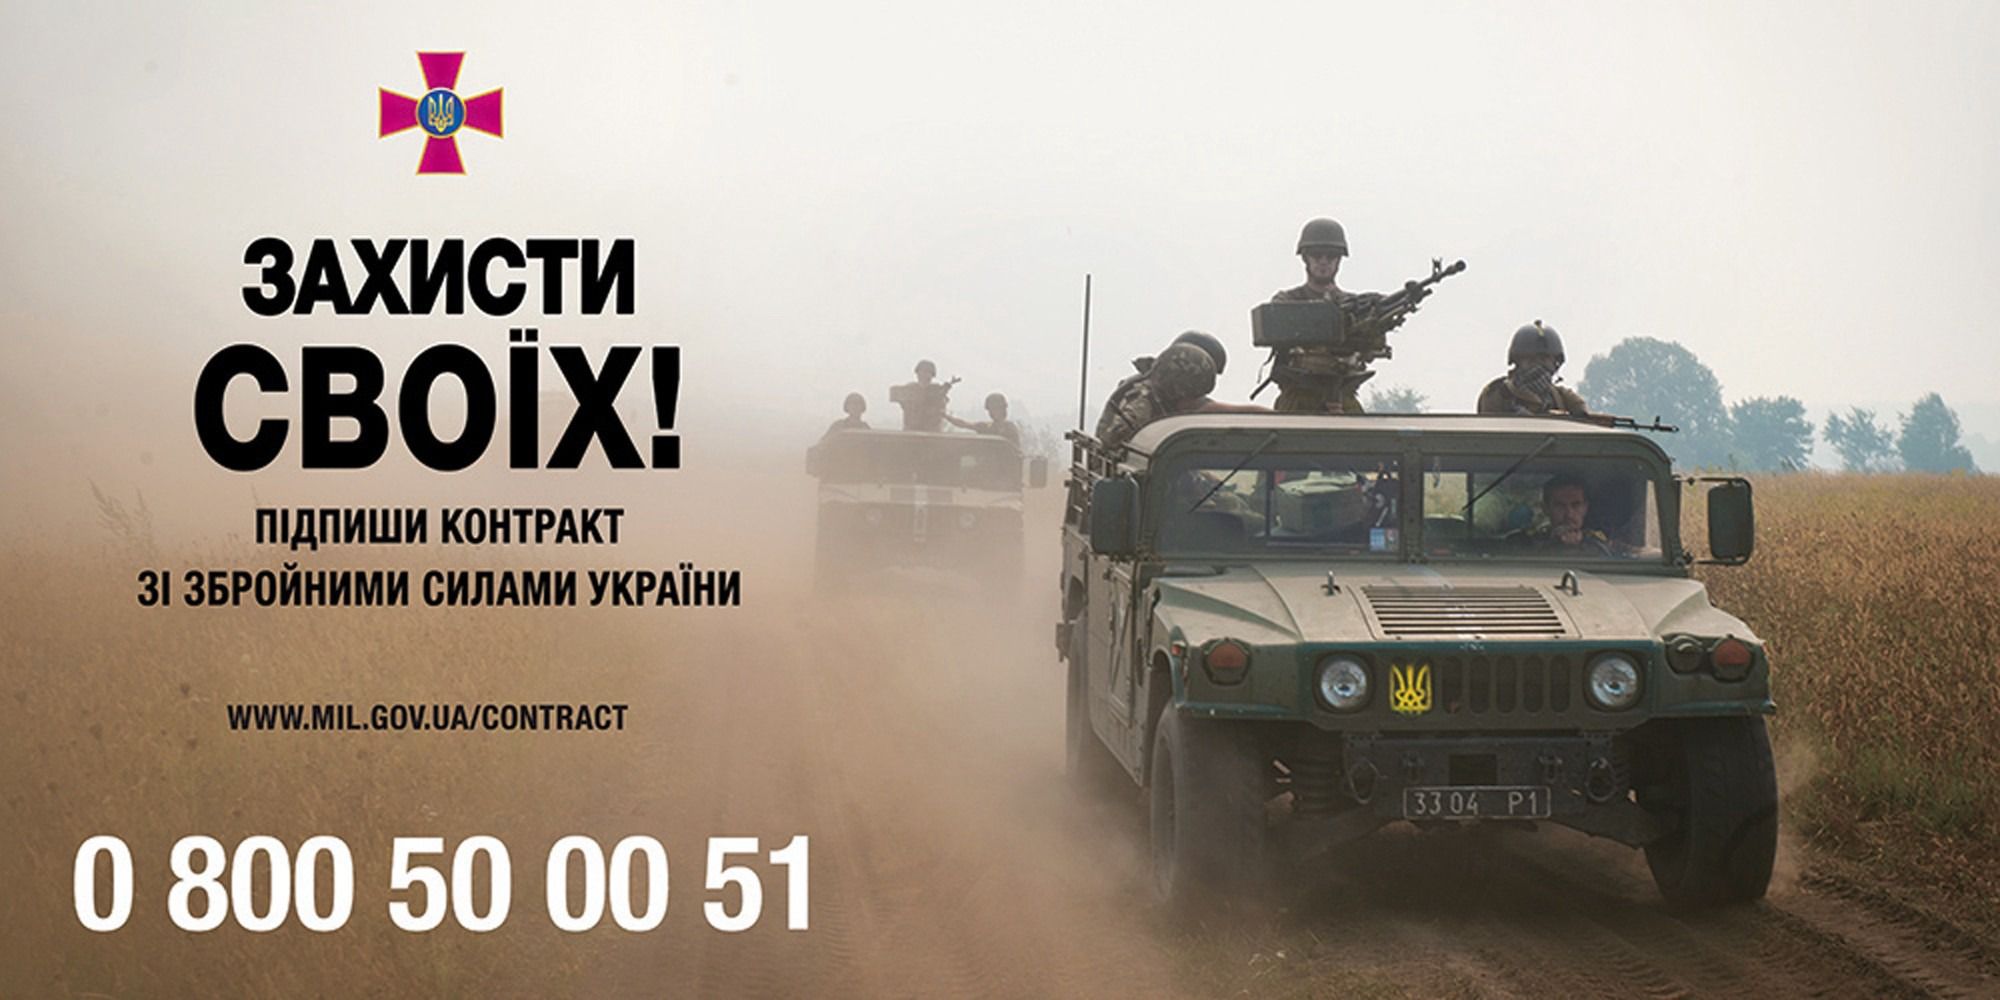 Кількість бажаючих піти в українську армію на контракт зросла в 25 разів. Це дає можливість виконати указ президента про демобілізацію.